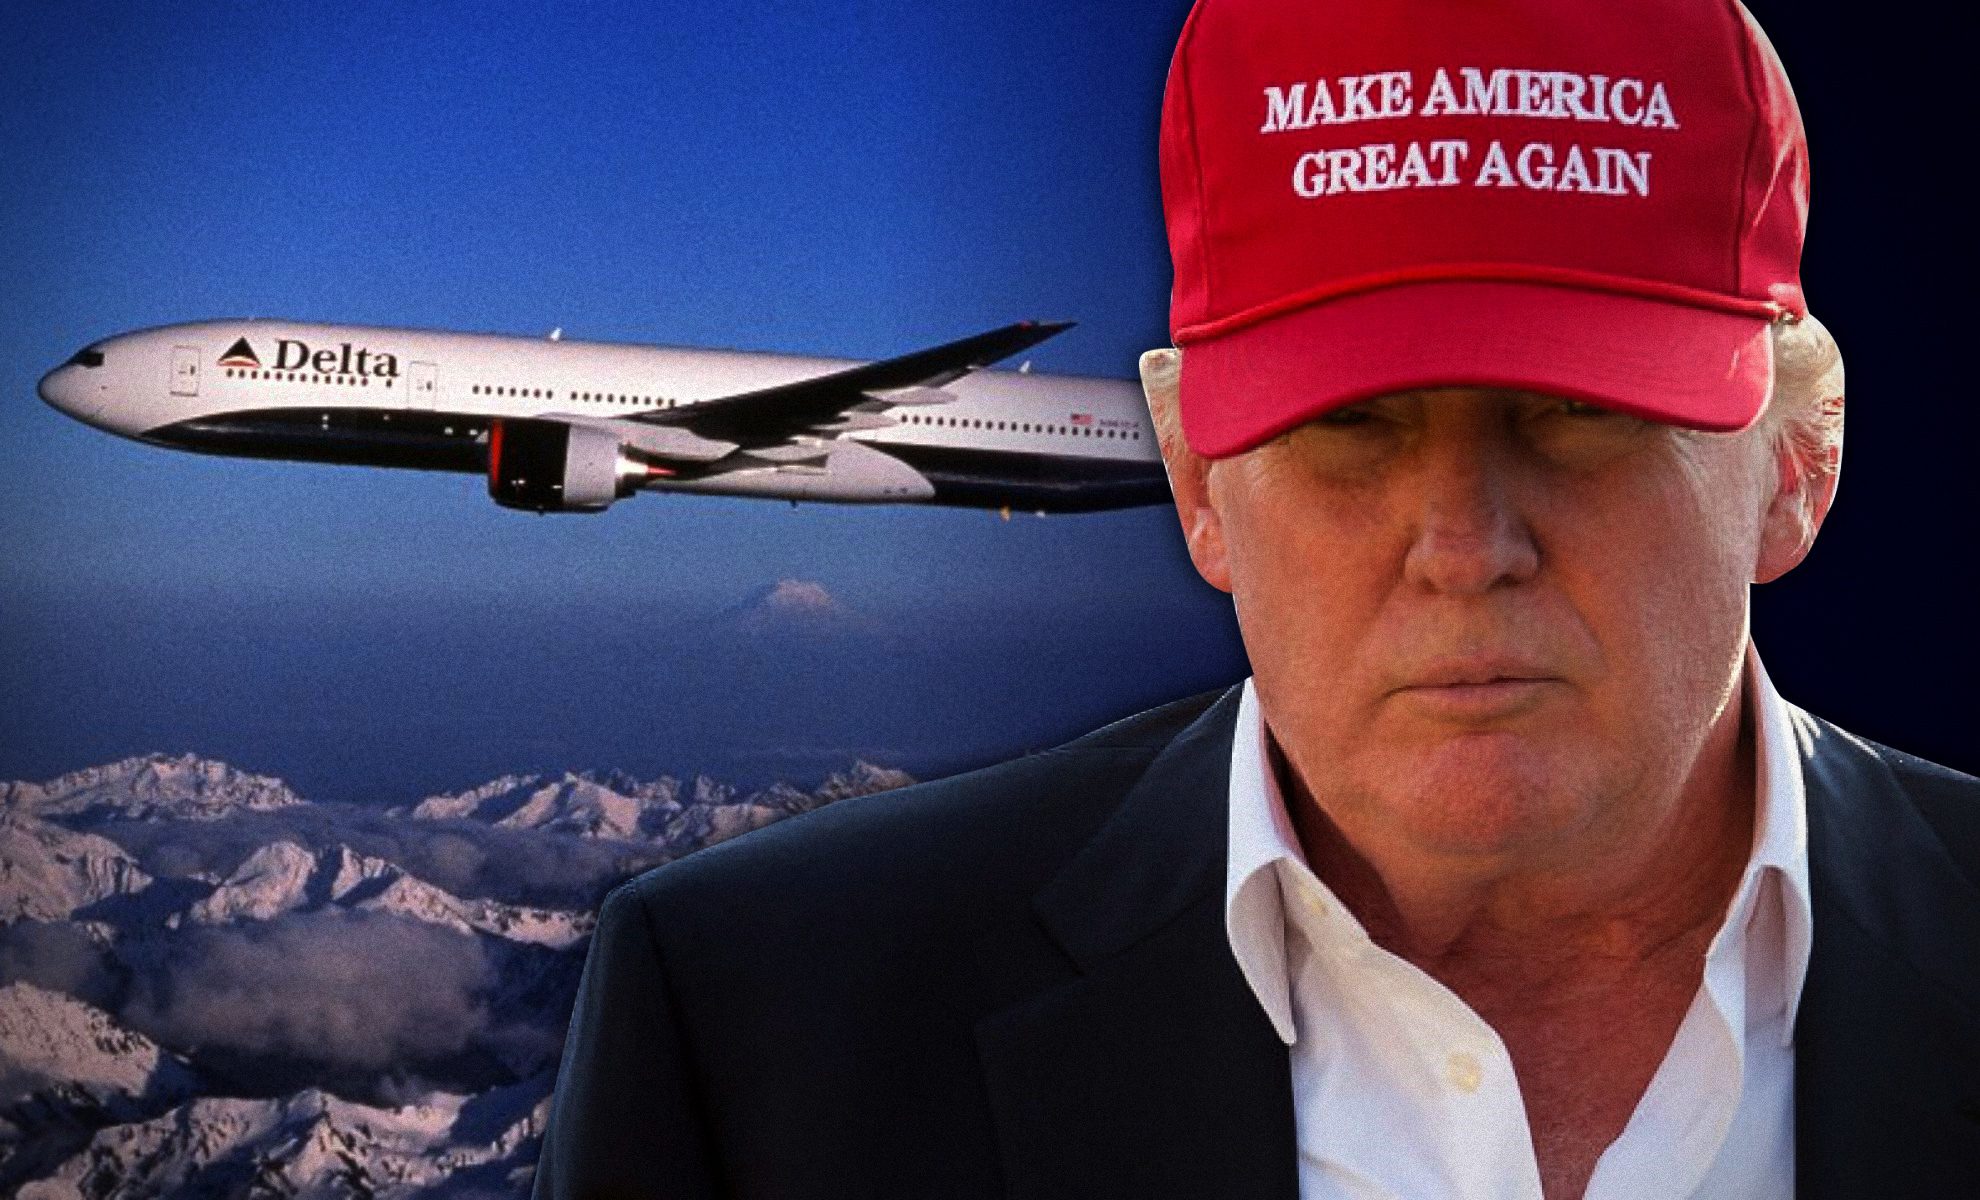 Zwolennicy Trumpa wyrzuceni z samolotu. Początek prześladowania konserwatystów w USA?